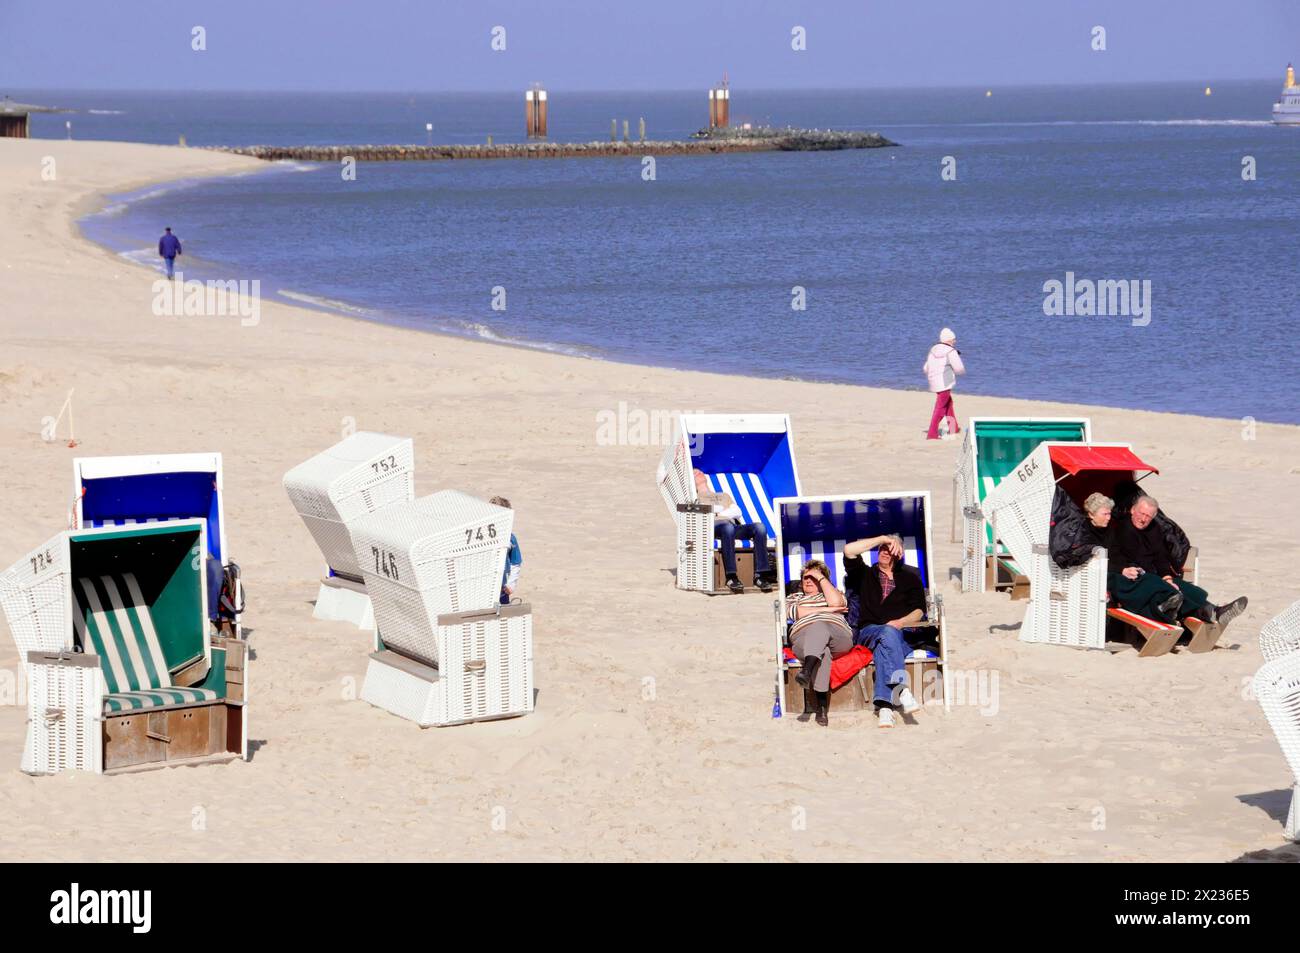 Am Strand bei Hoernum, Sylt, Nordfriesische Insel, Schleswig-Holstein entspannen sich die Menschen in Liegestühlen und spazieren am Sandstrand am Meer entlang Stockfoto